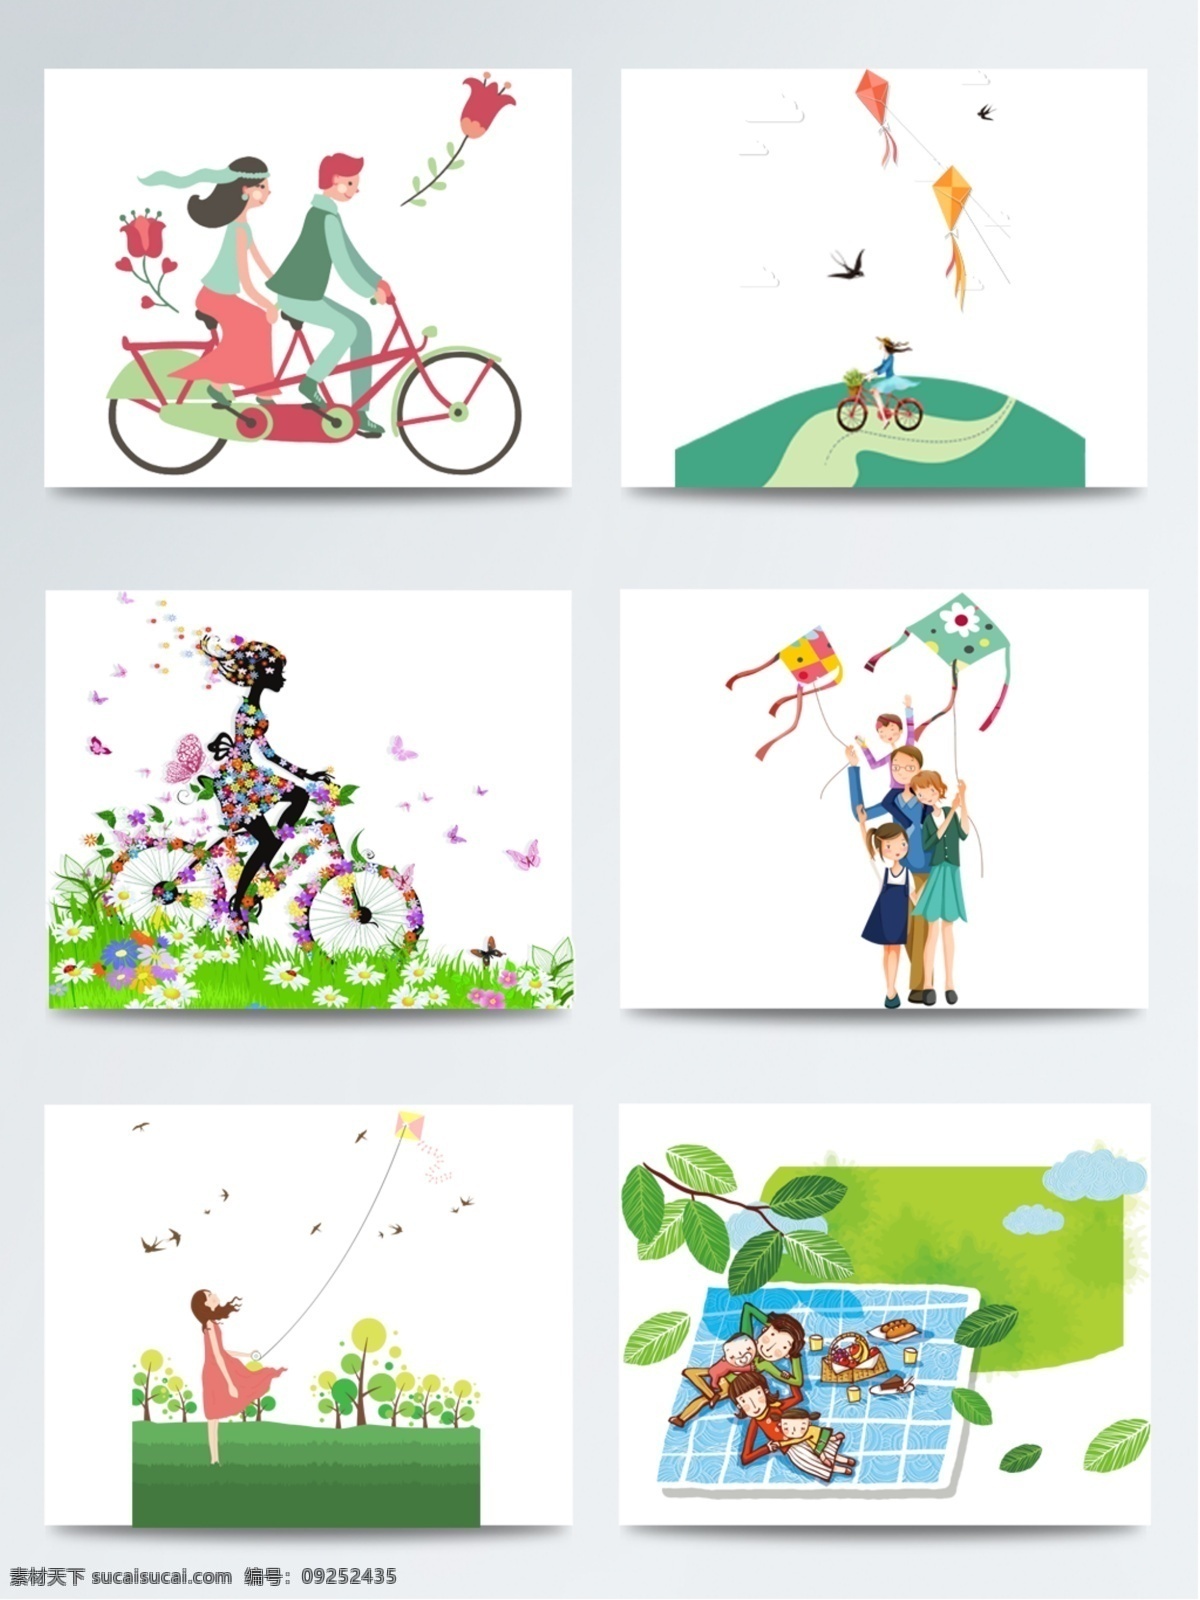 2018 春天 踏青 创意 元素 卡通创意 配图 放风筝 单车 春游踏青 草木绿 野炊